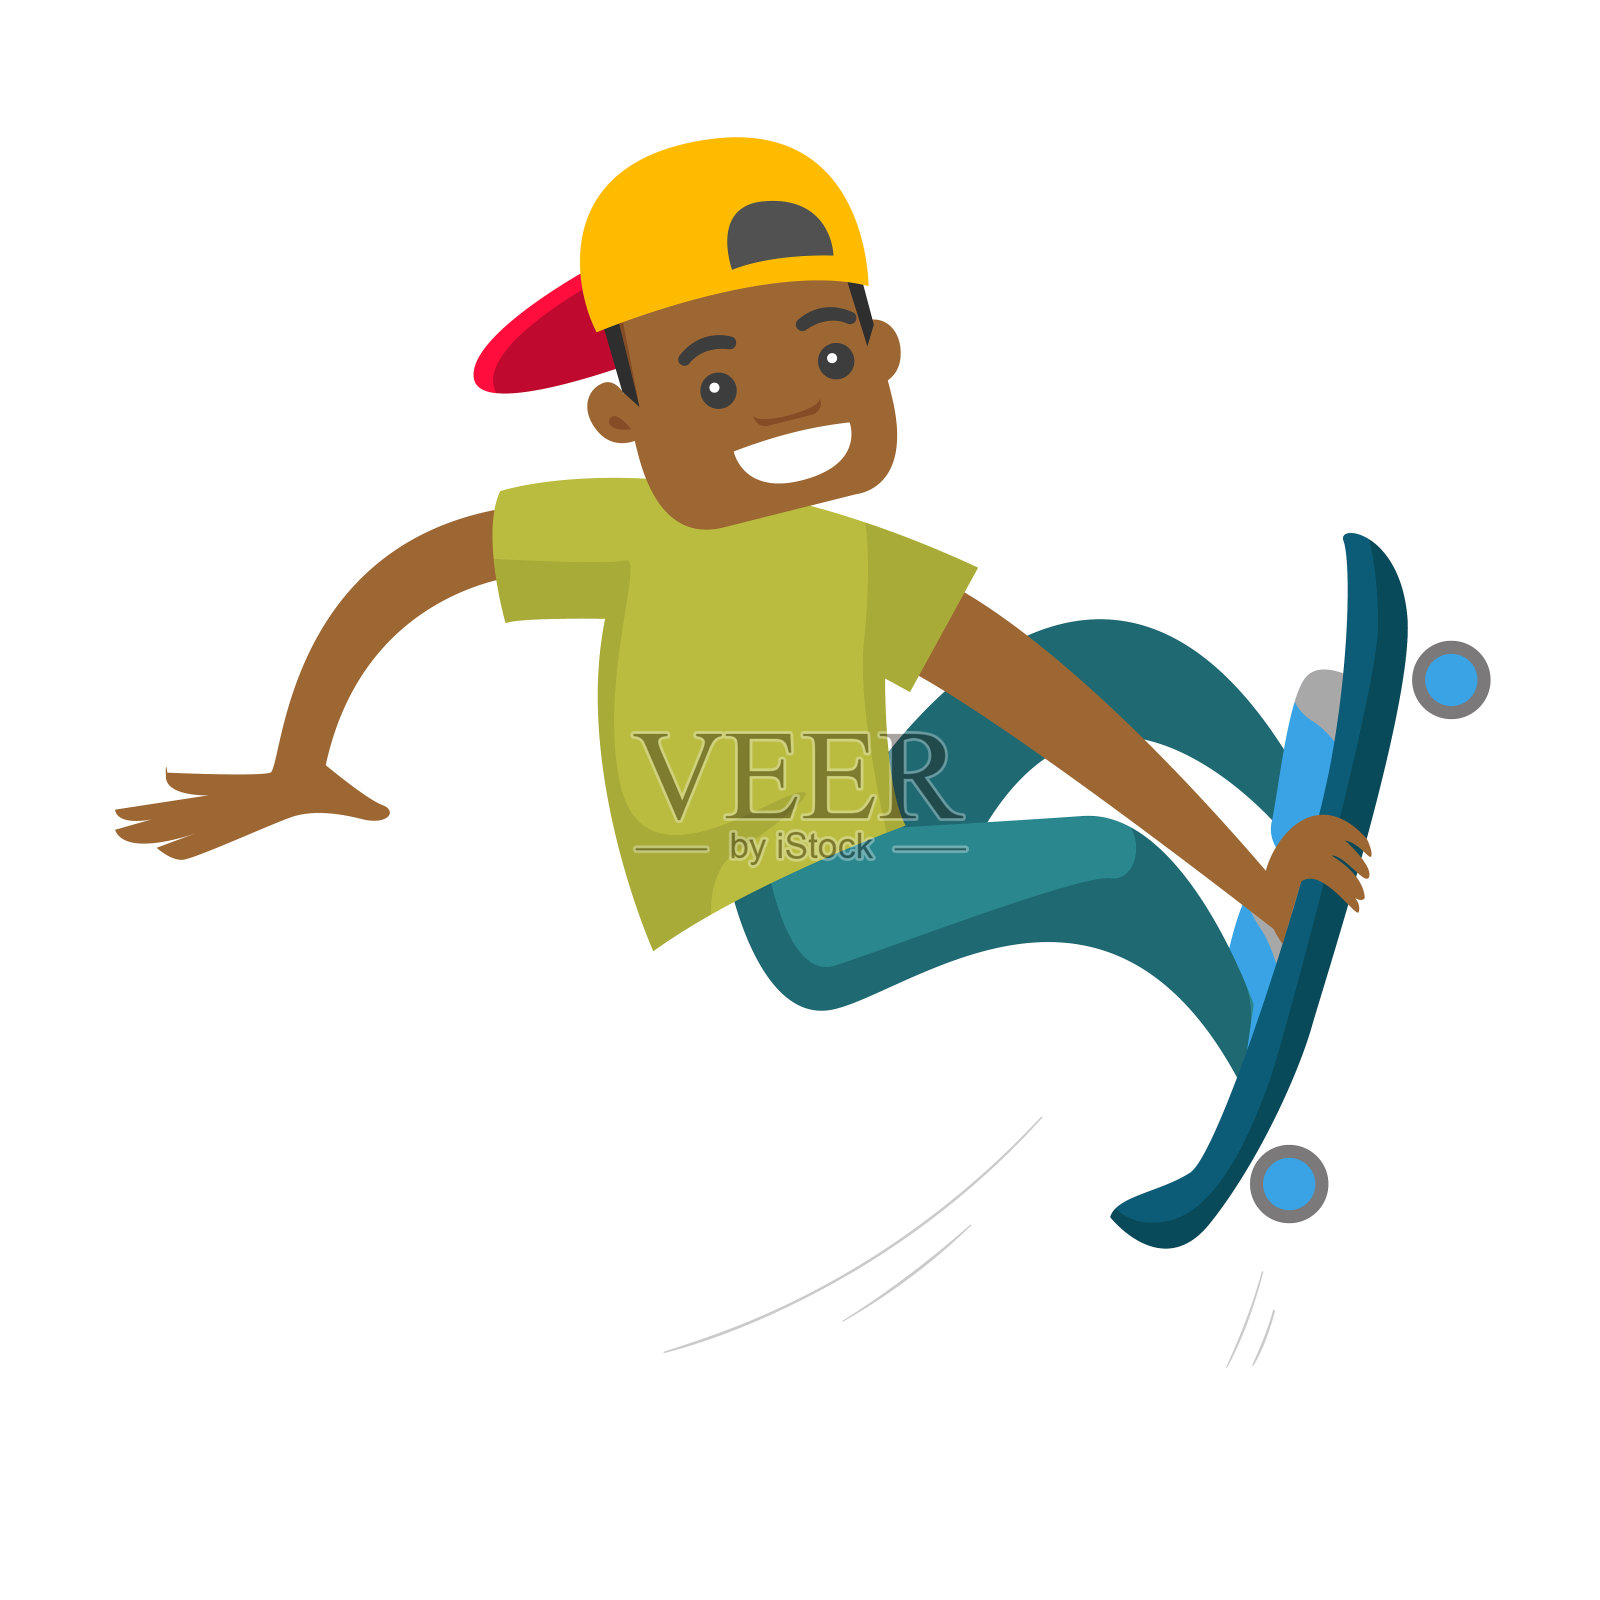 一个骑滑板的黑人插画图片素材